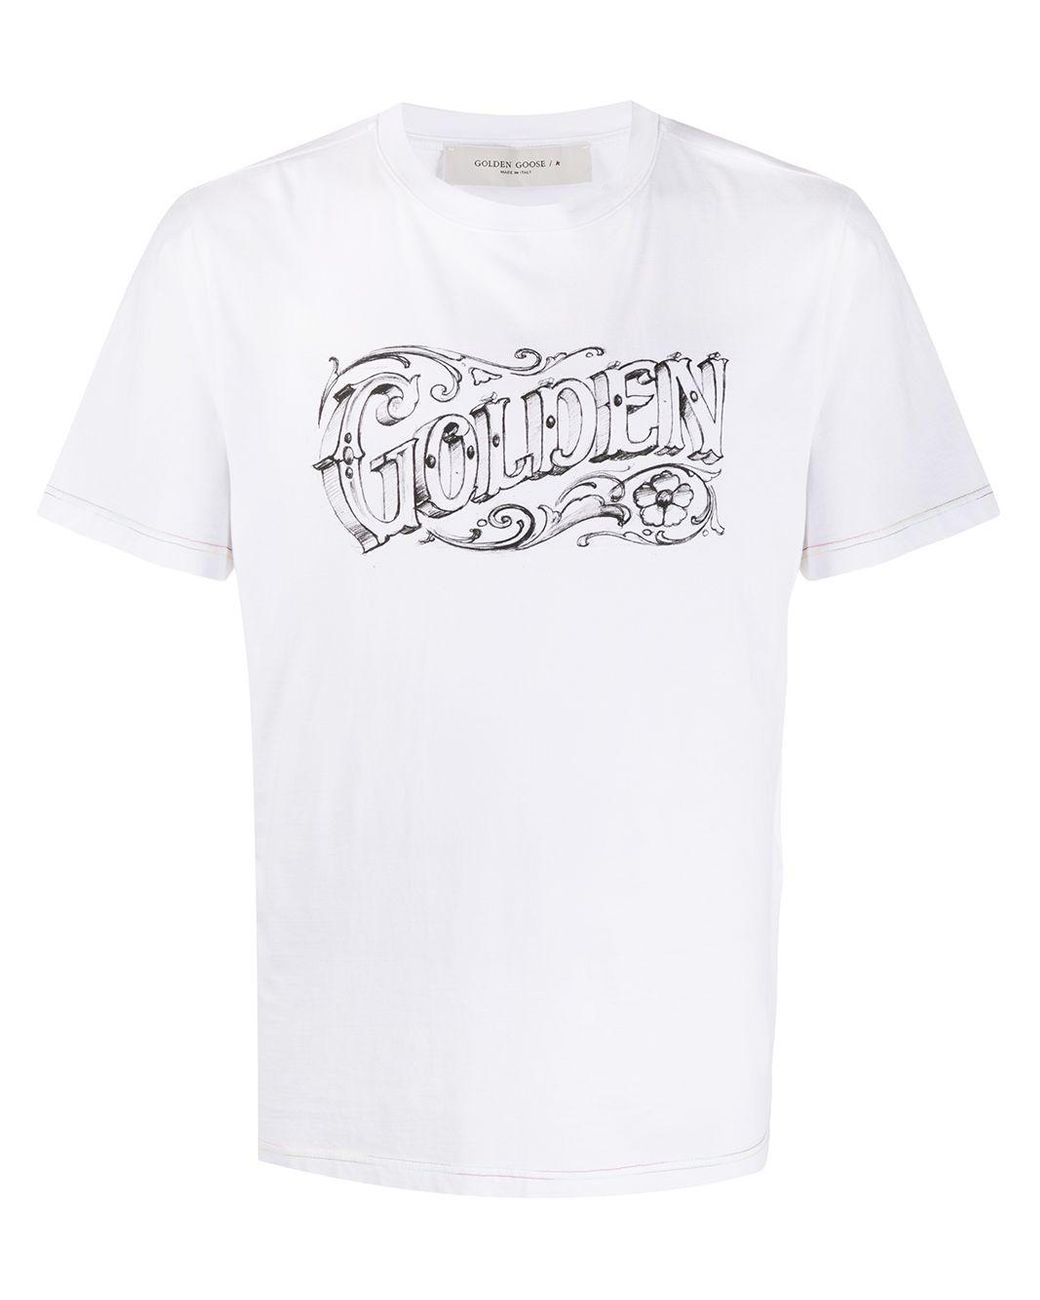 Golden Goose Deluxe Brand Cotton Logo-print T-shirt in White for Men - Lyst